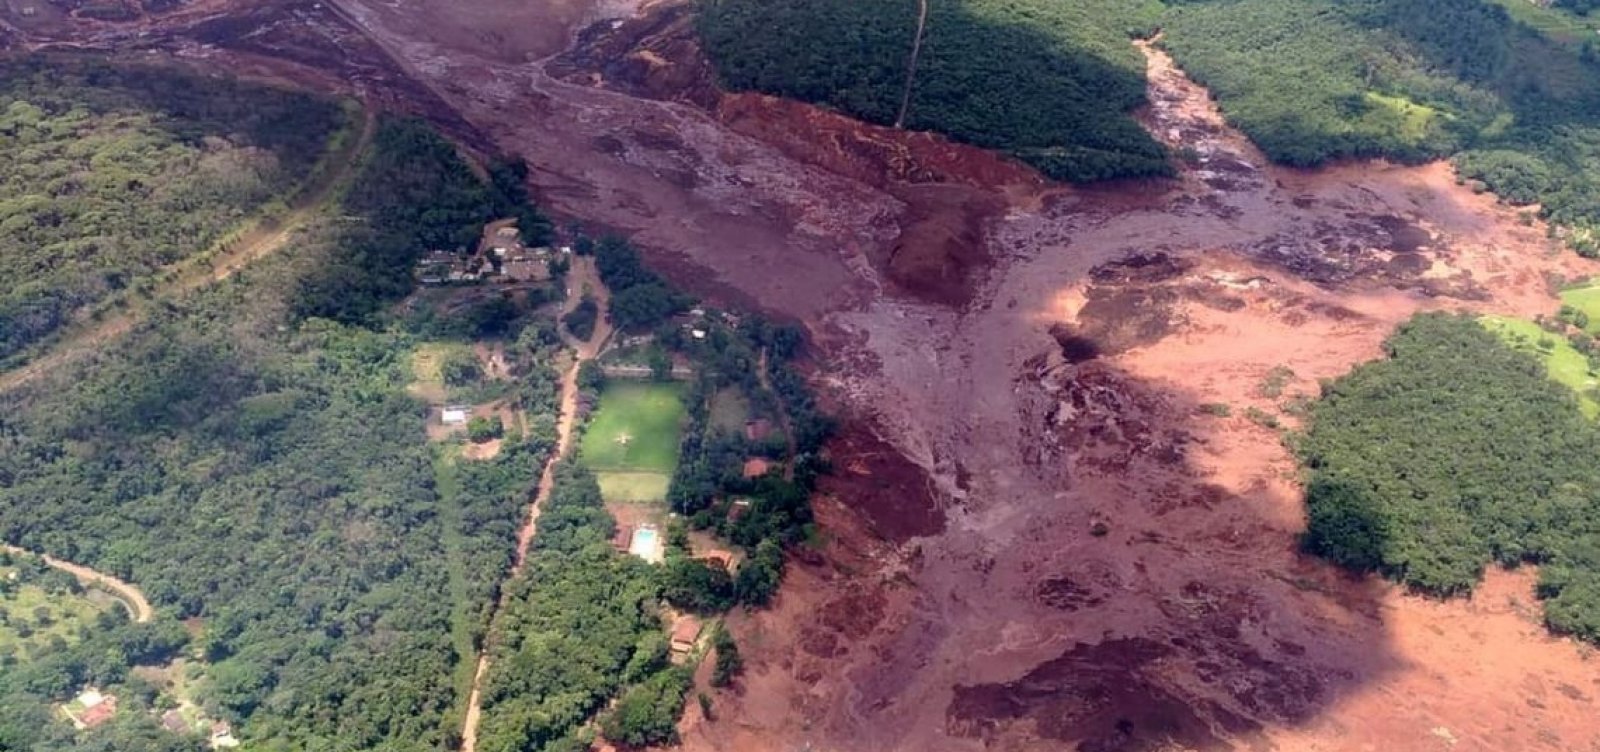 Após tragédia, governo destina R$ 62 milhões para o turismo em Brumadinho